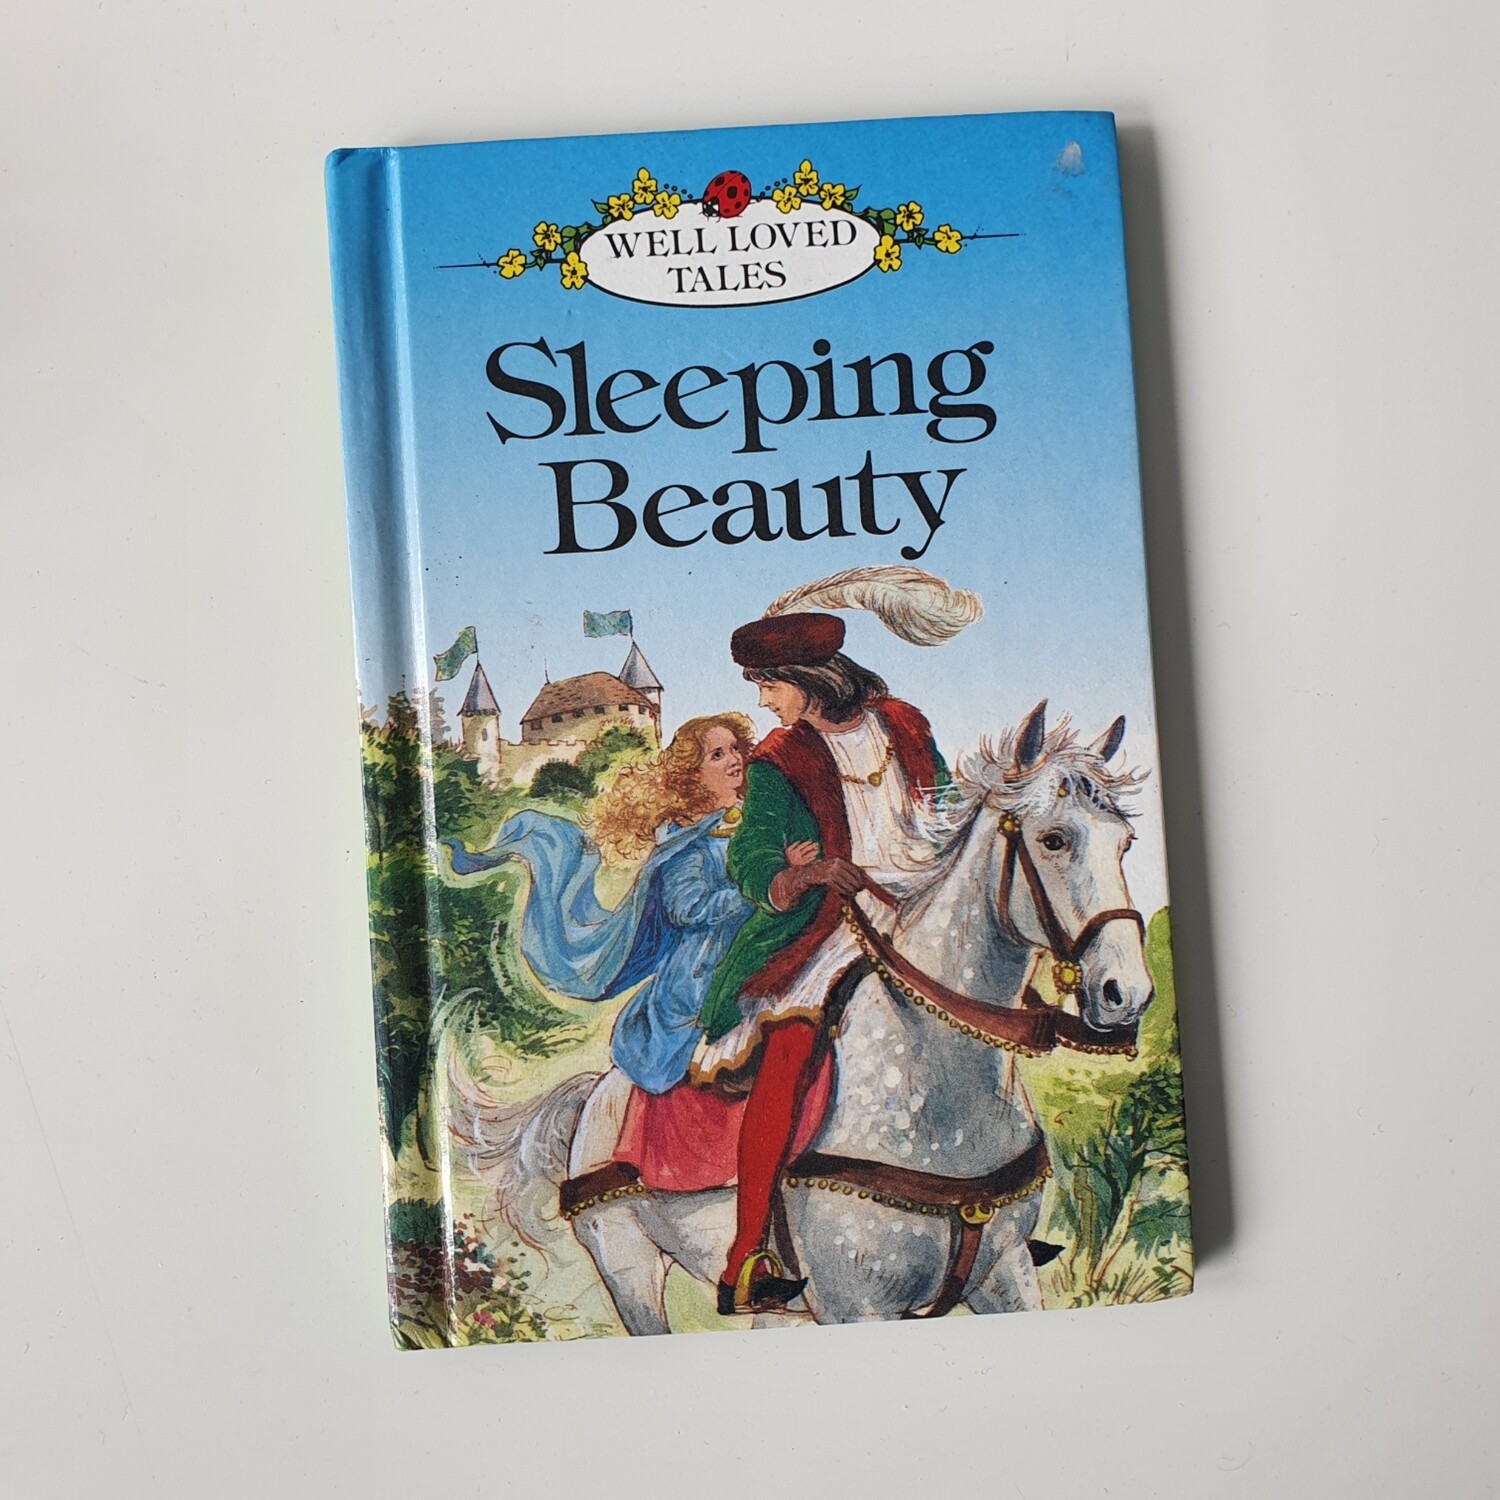 Sleeping Beauty Notebook - Ladybird Book